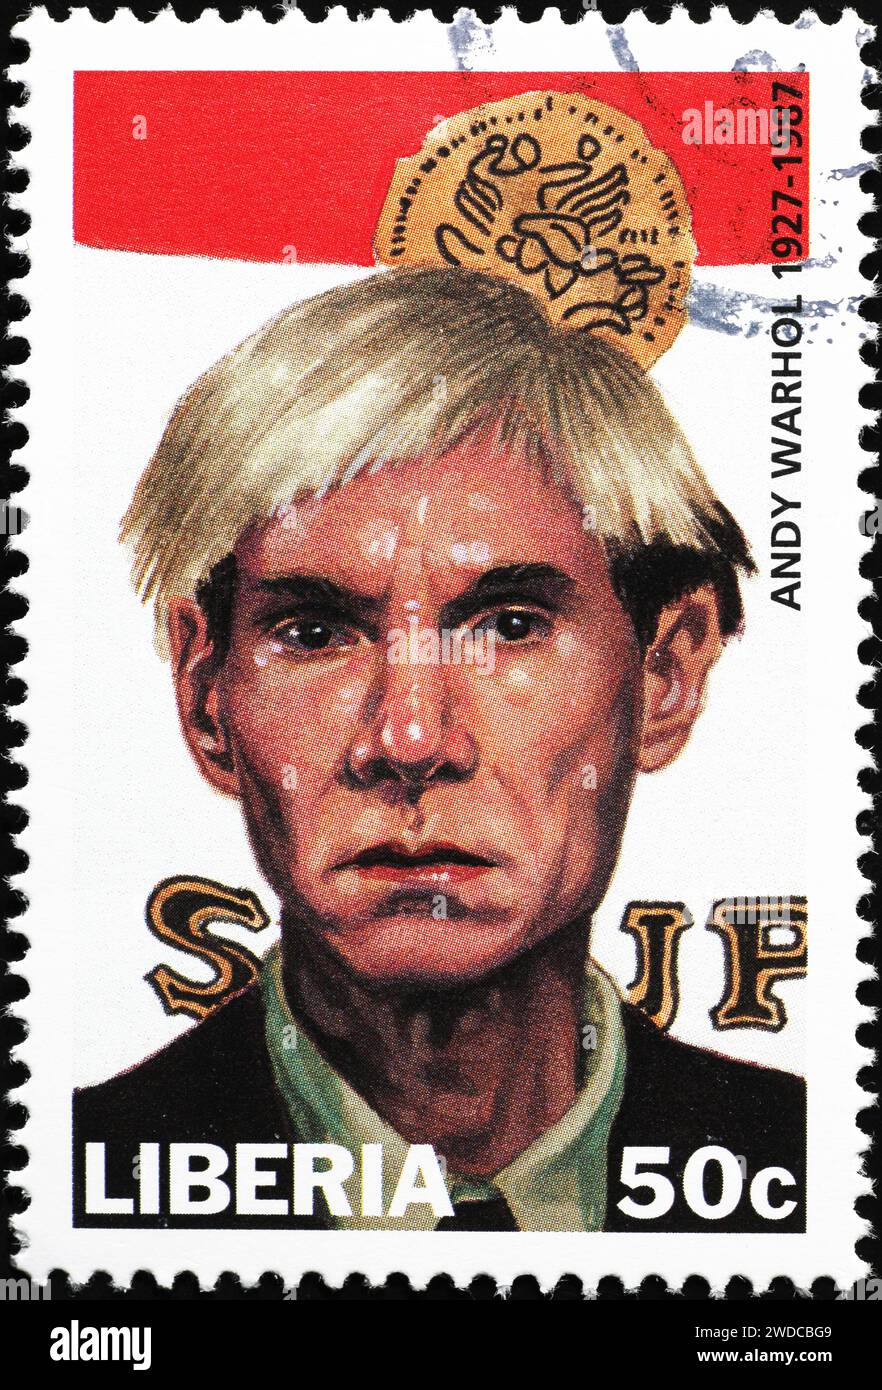 Portrait d'Andy Warhol sur timbre-poste du Liberia Banque D'Images